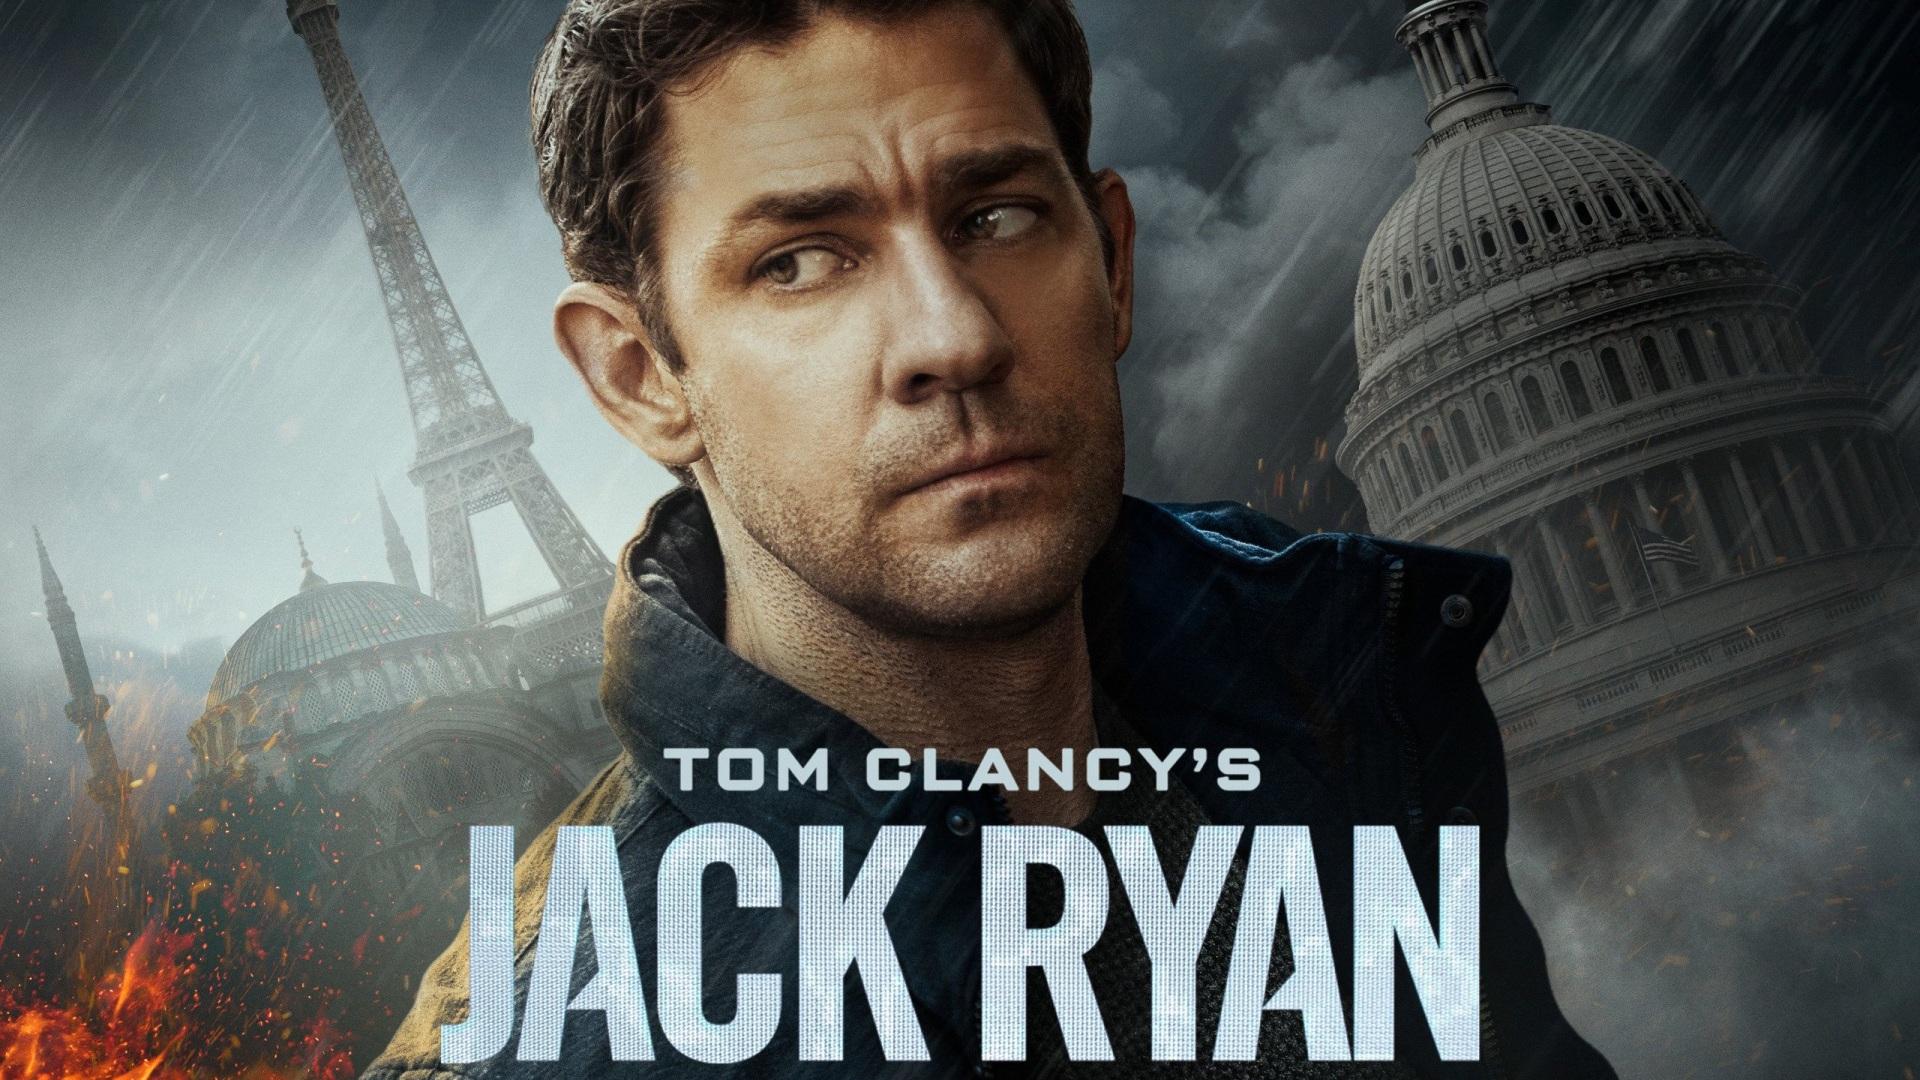 Jack Ryan de Tom Clancy